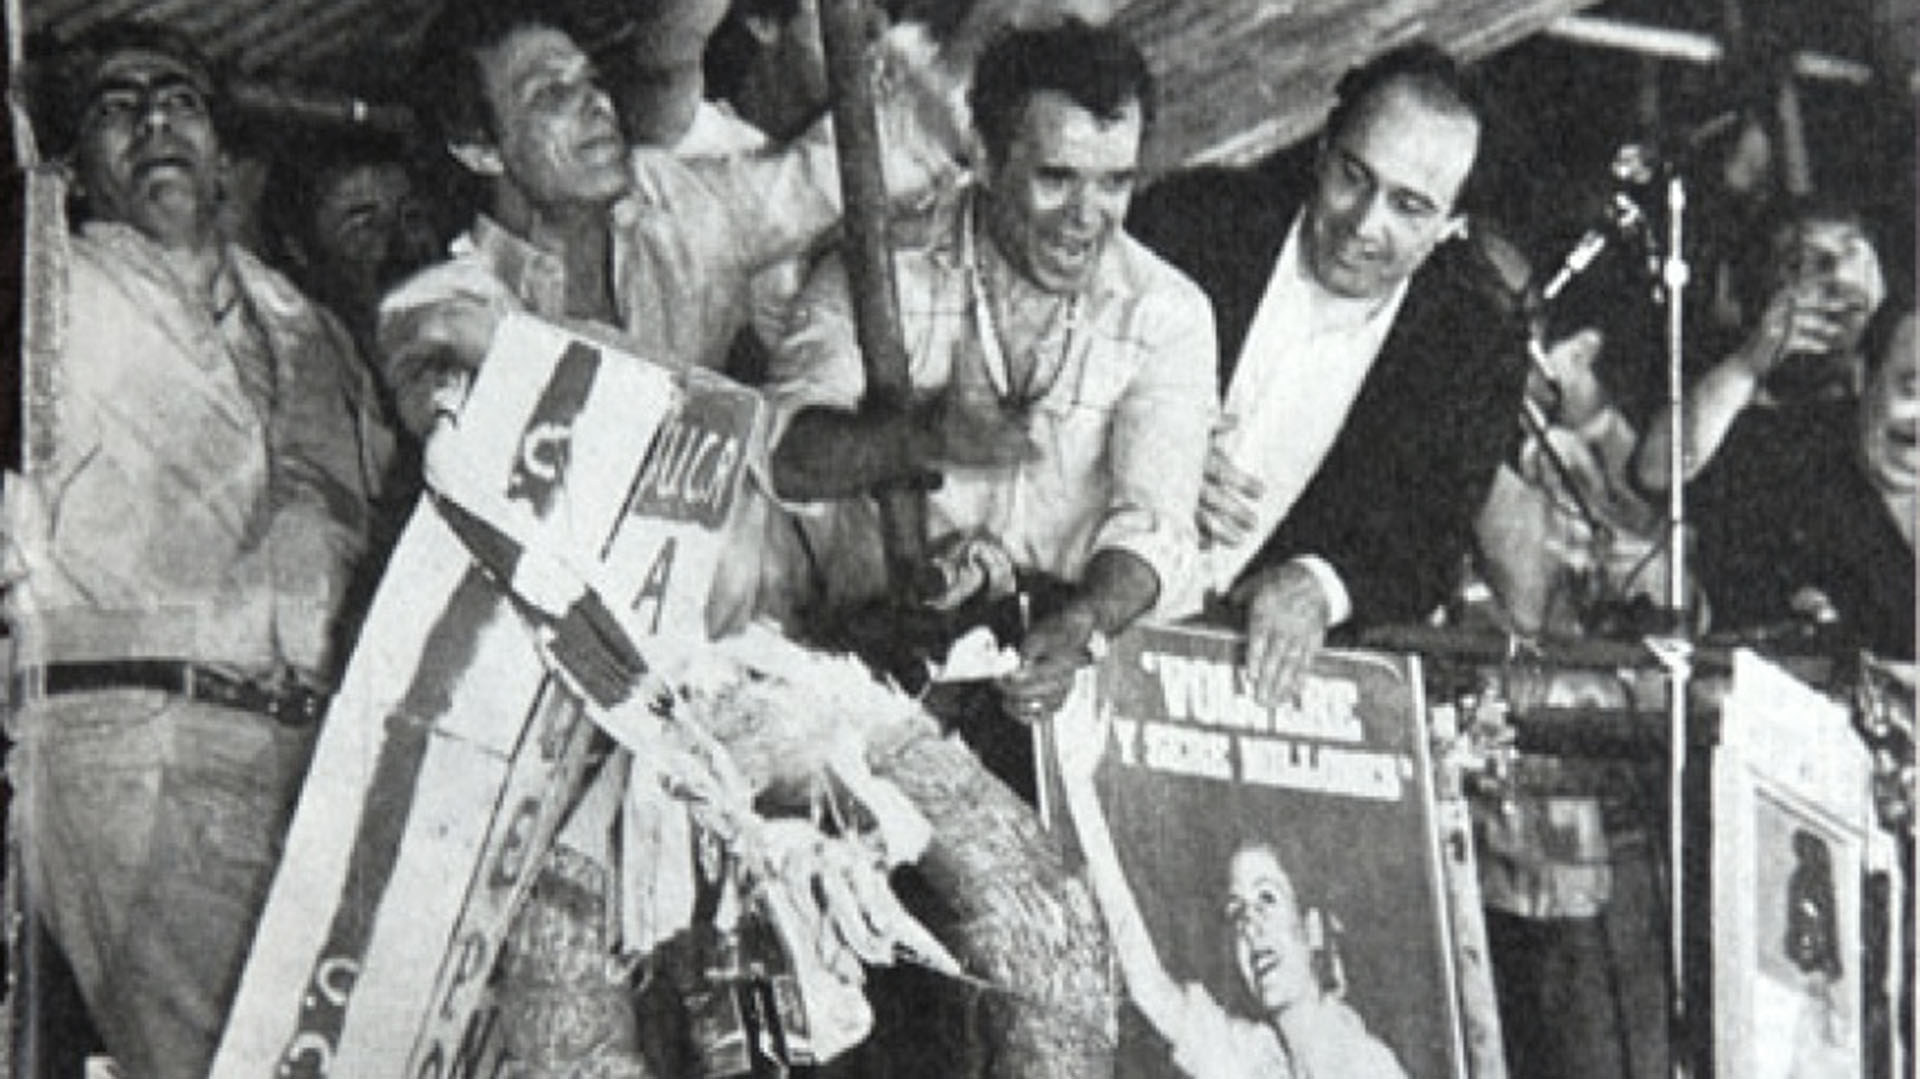 Imbelloni, Herminio Iglesias y Spadone en la quema del cajón en el acto de cierre peronista de Lúder en la 9 de Julio